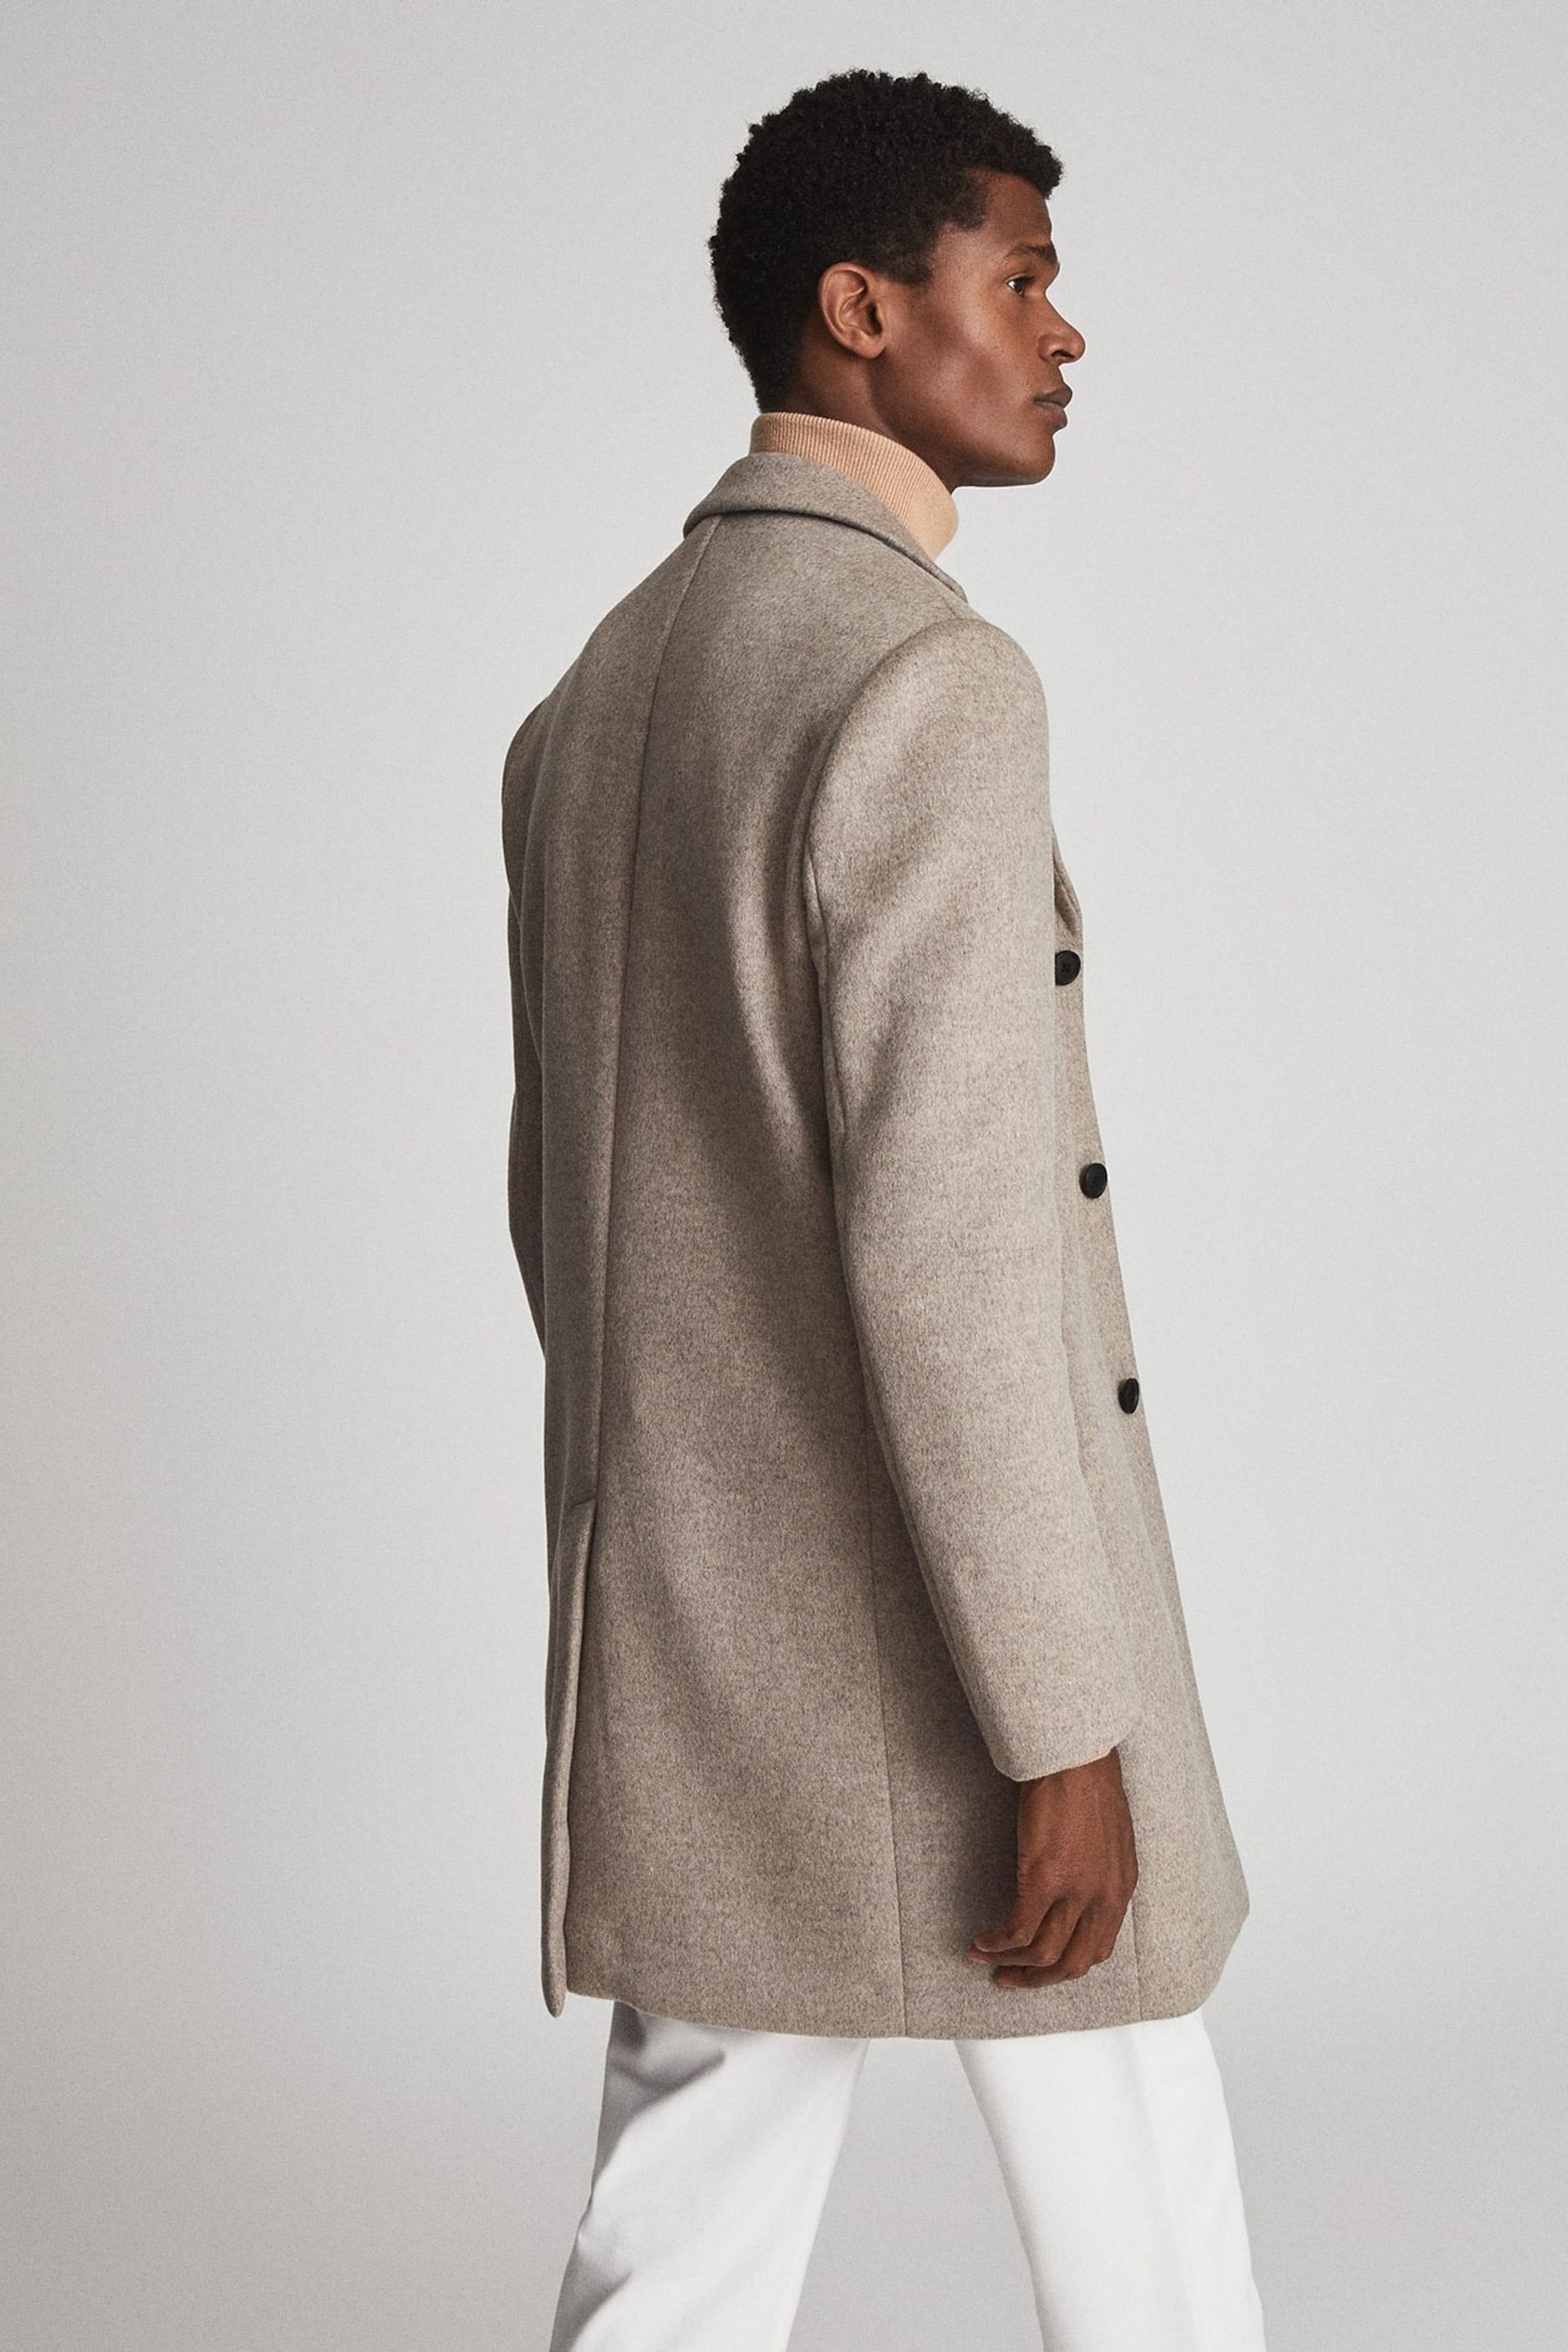 Reiss Natural Gable Wool Blend Epsom Overcoat - Image 5 of 5